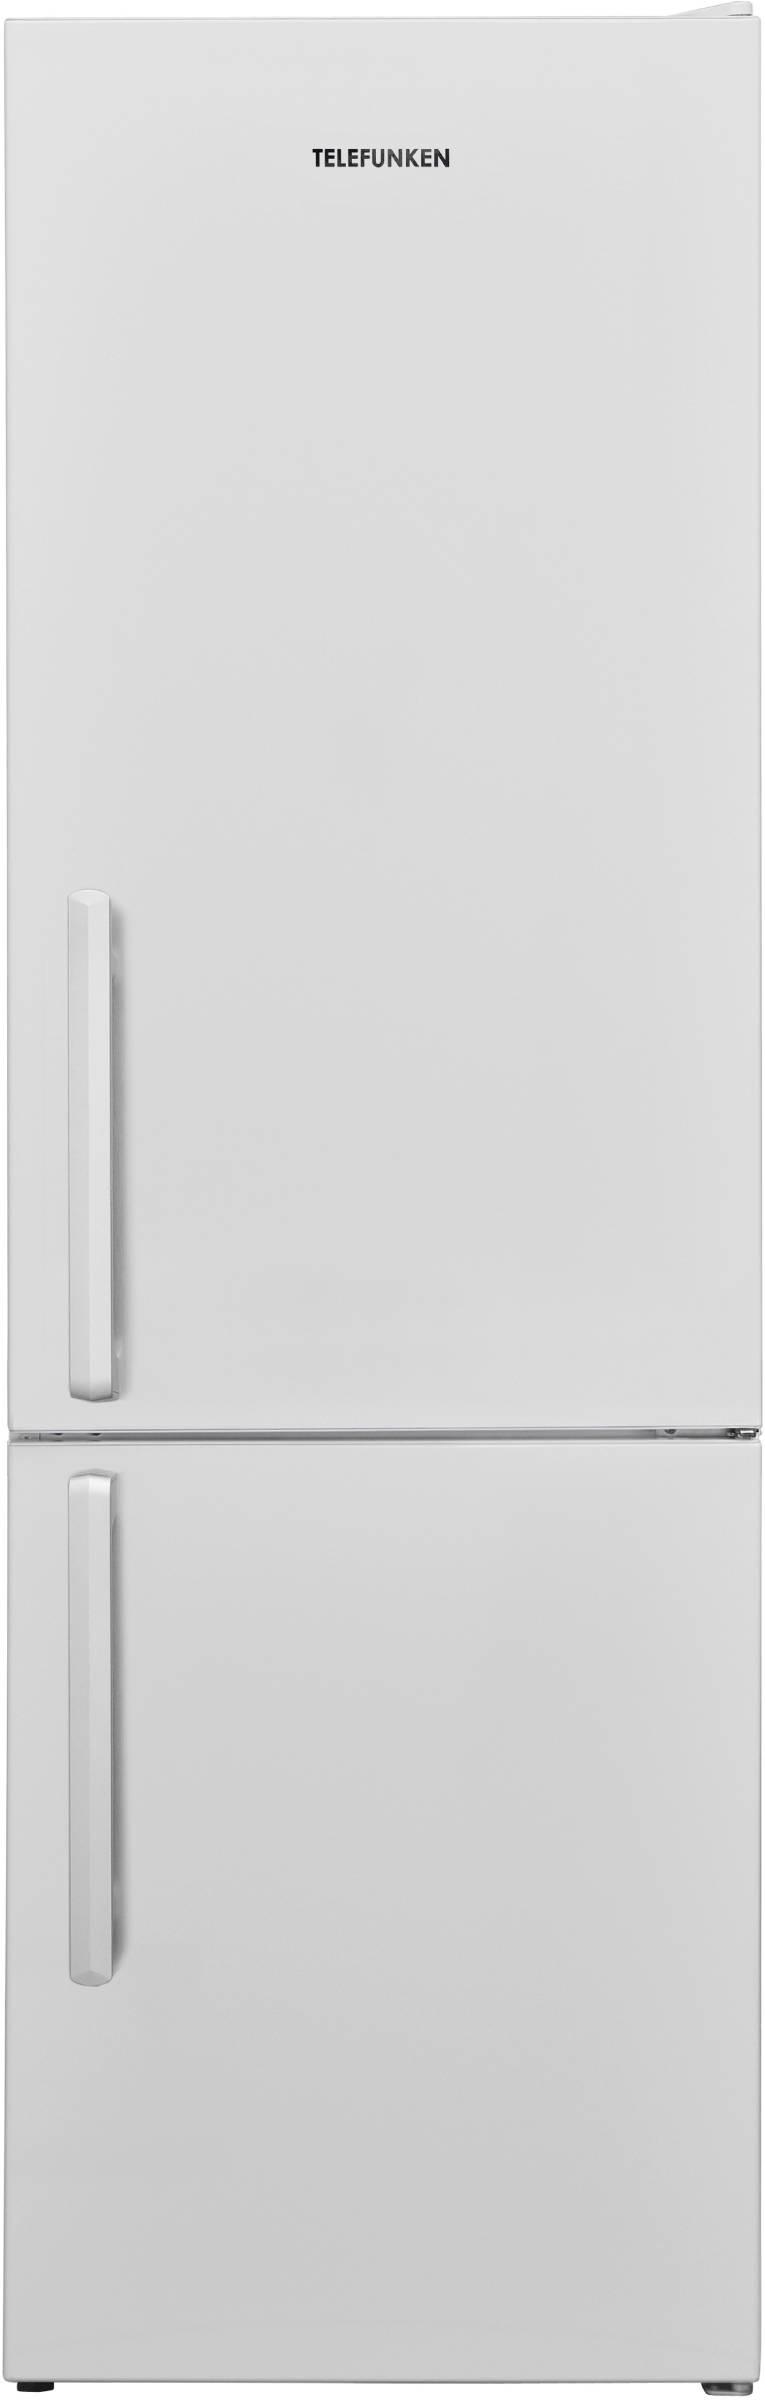 TELEFUNKEN Réfrigérateur congélateur bas Froid Statique 268L Blanc  CB268PFW